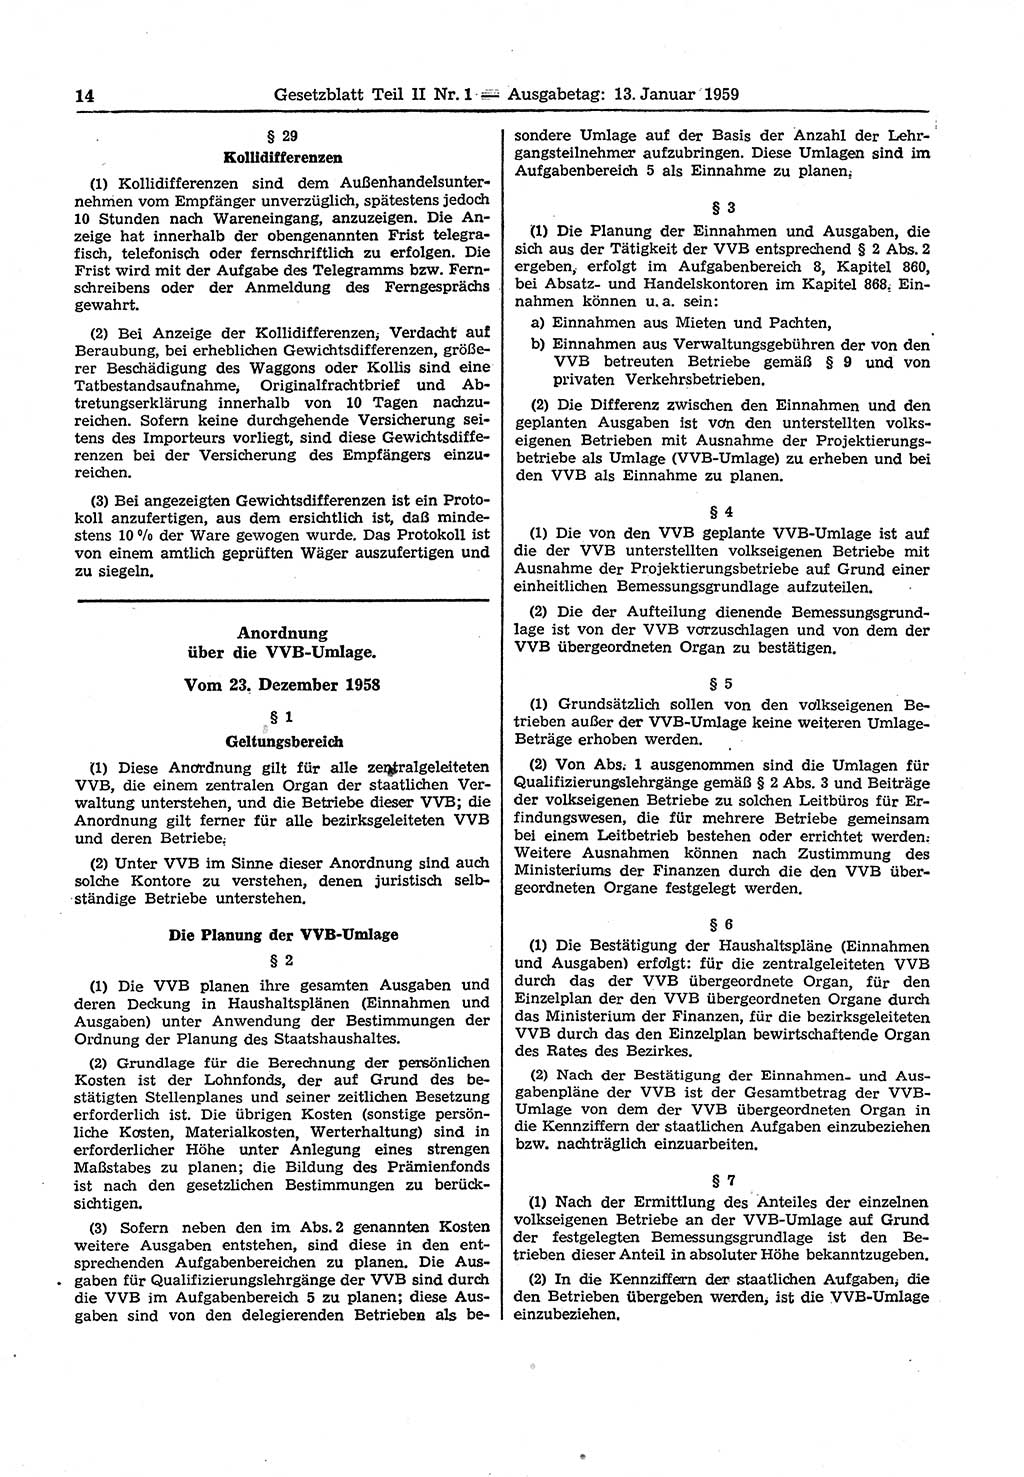 Gesetzblatt (GBl.) der Deutschen Demokratischen Republik (DDR) Teil ⅠⅠ 1959, Seite 14 (GBl. DDR ⅠⅠ 1959, S. 14)